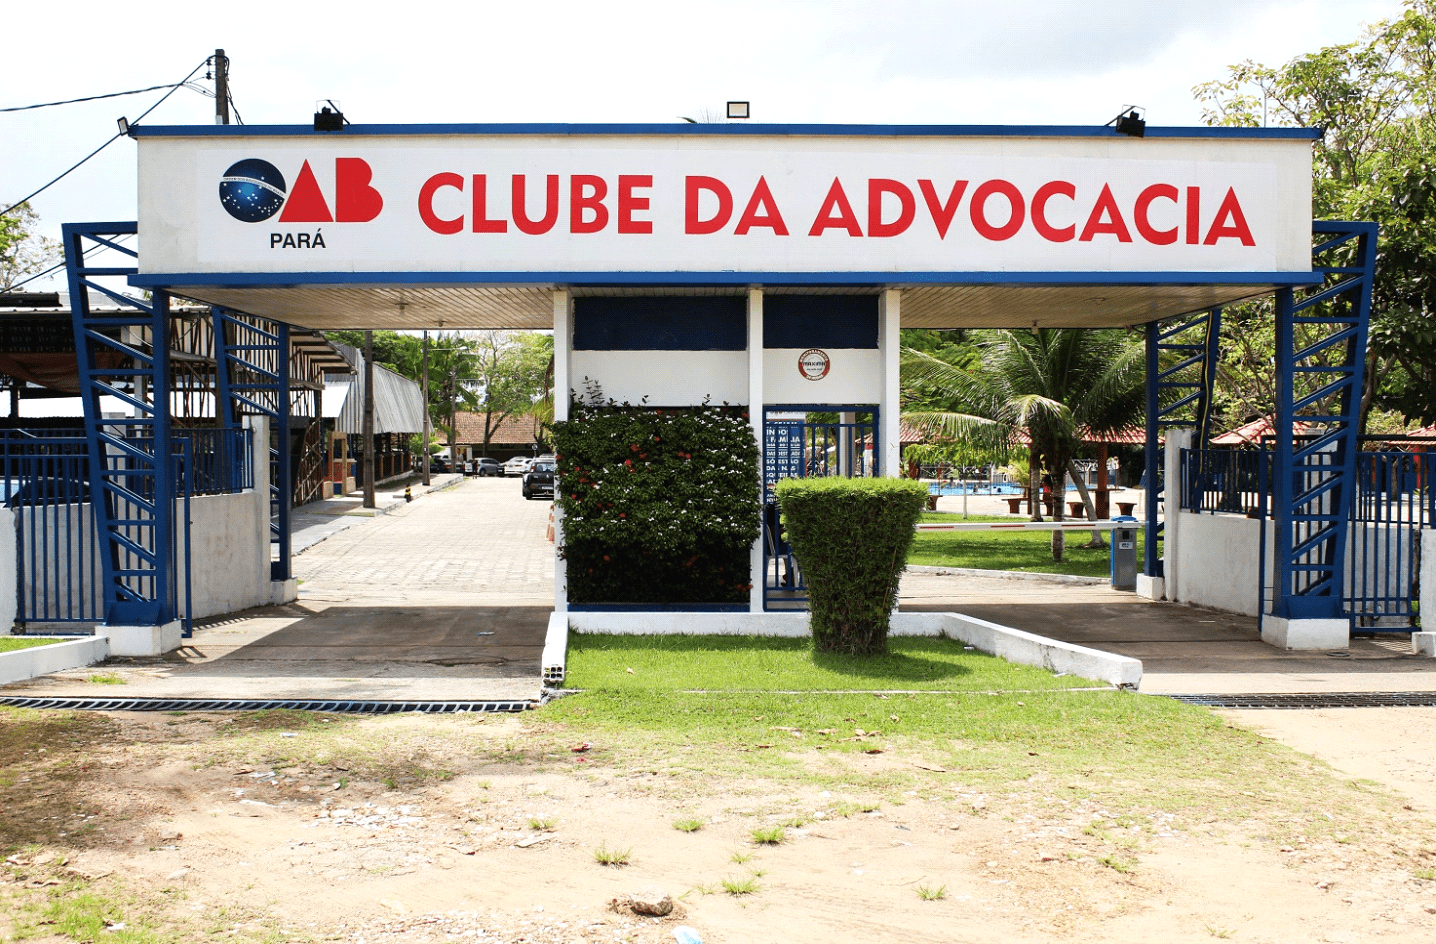 OAB : Clube dos Advogados OAB-BA